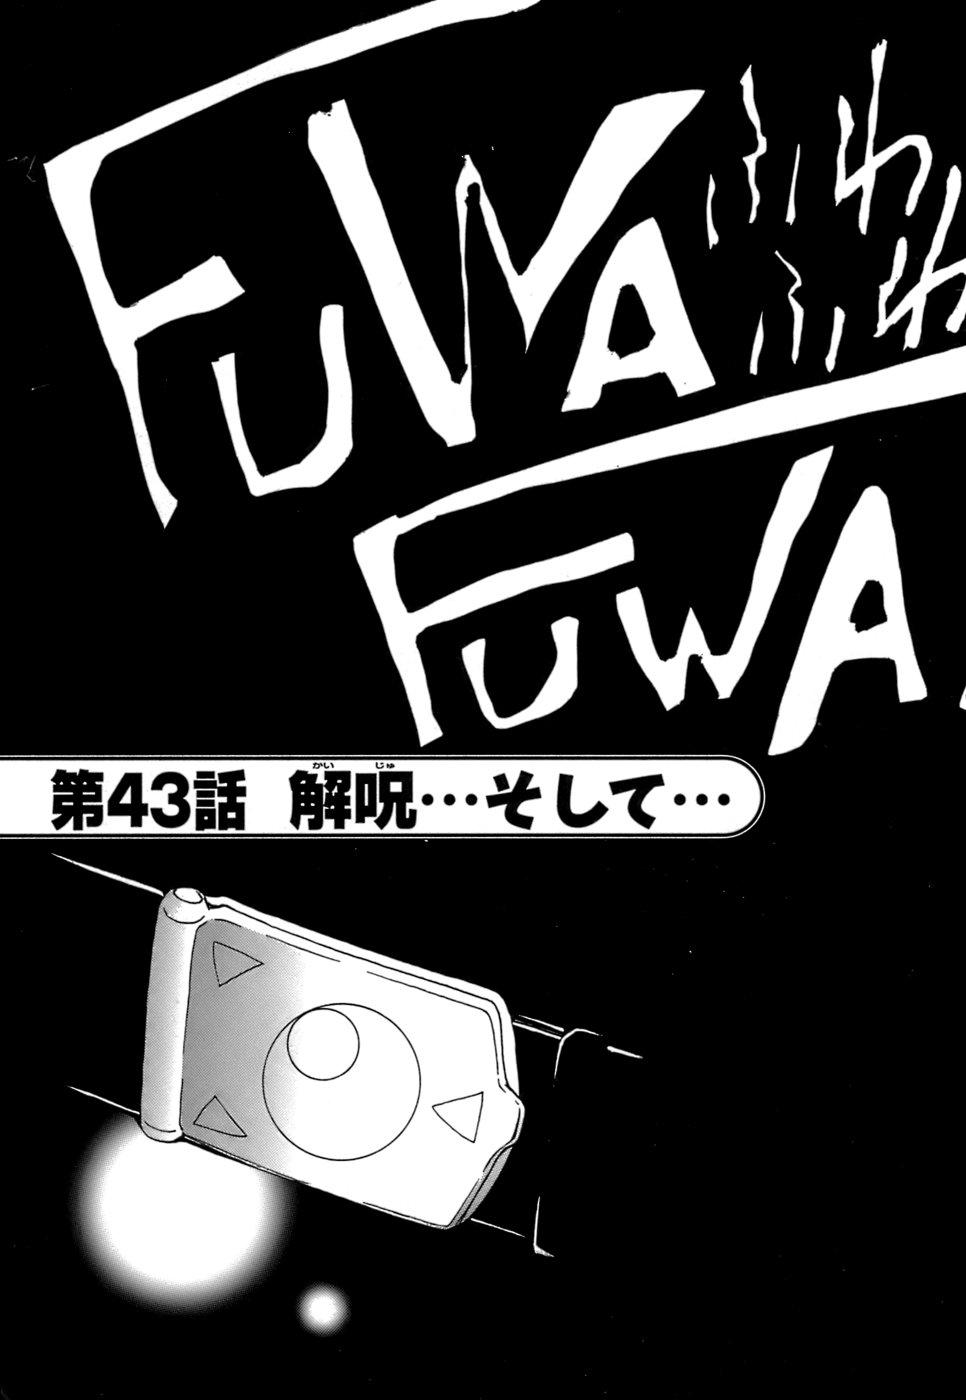 Fuwa Fuwa. 5 151